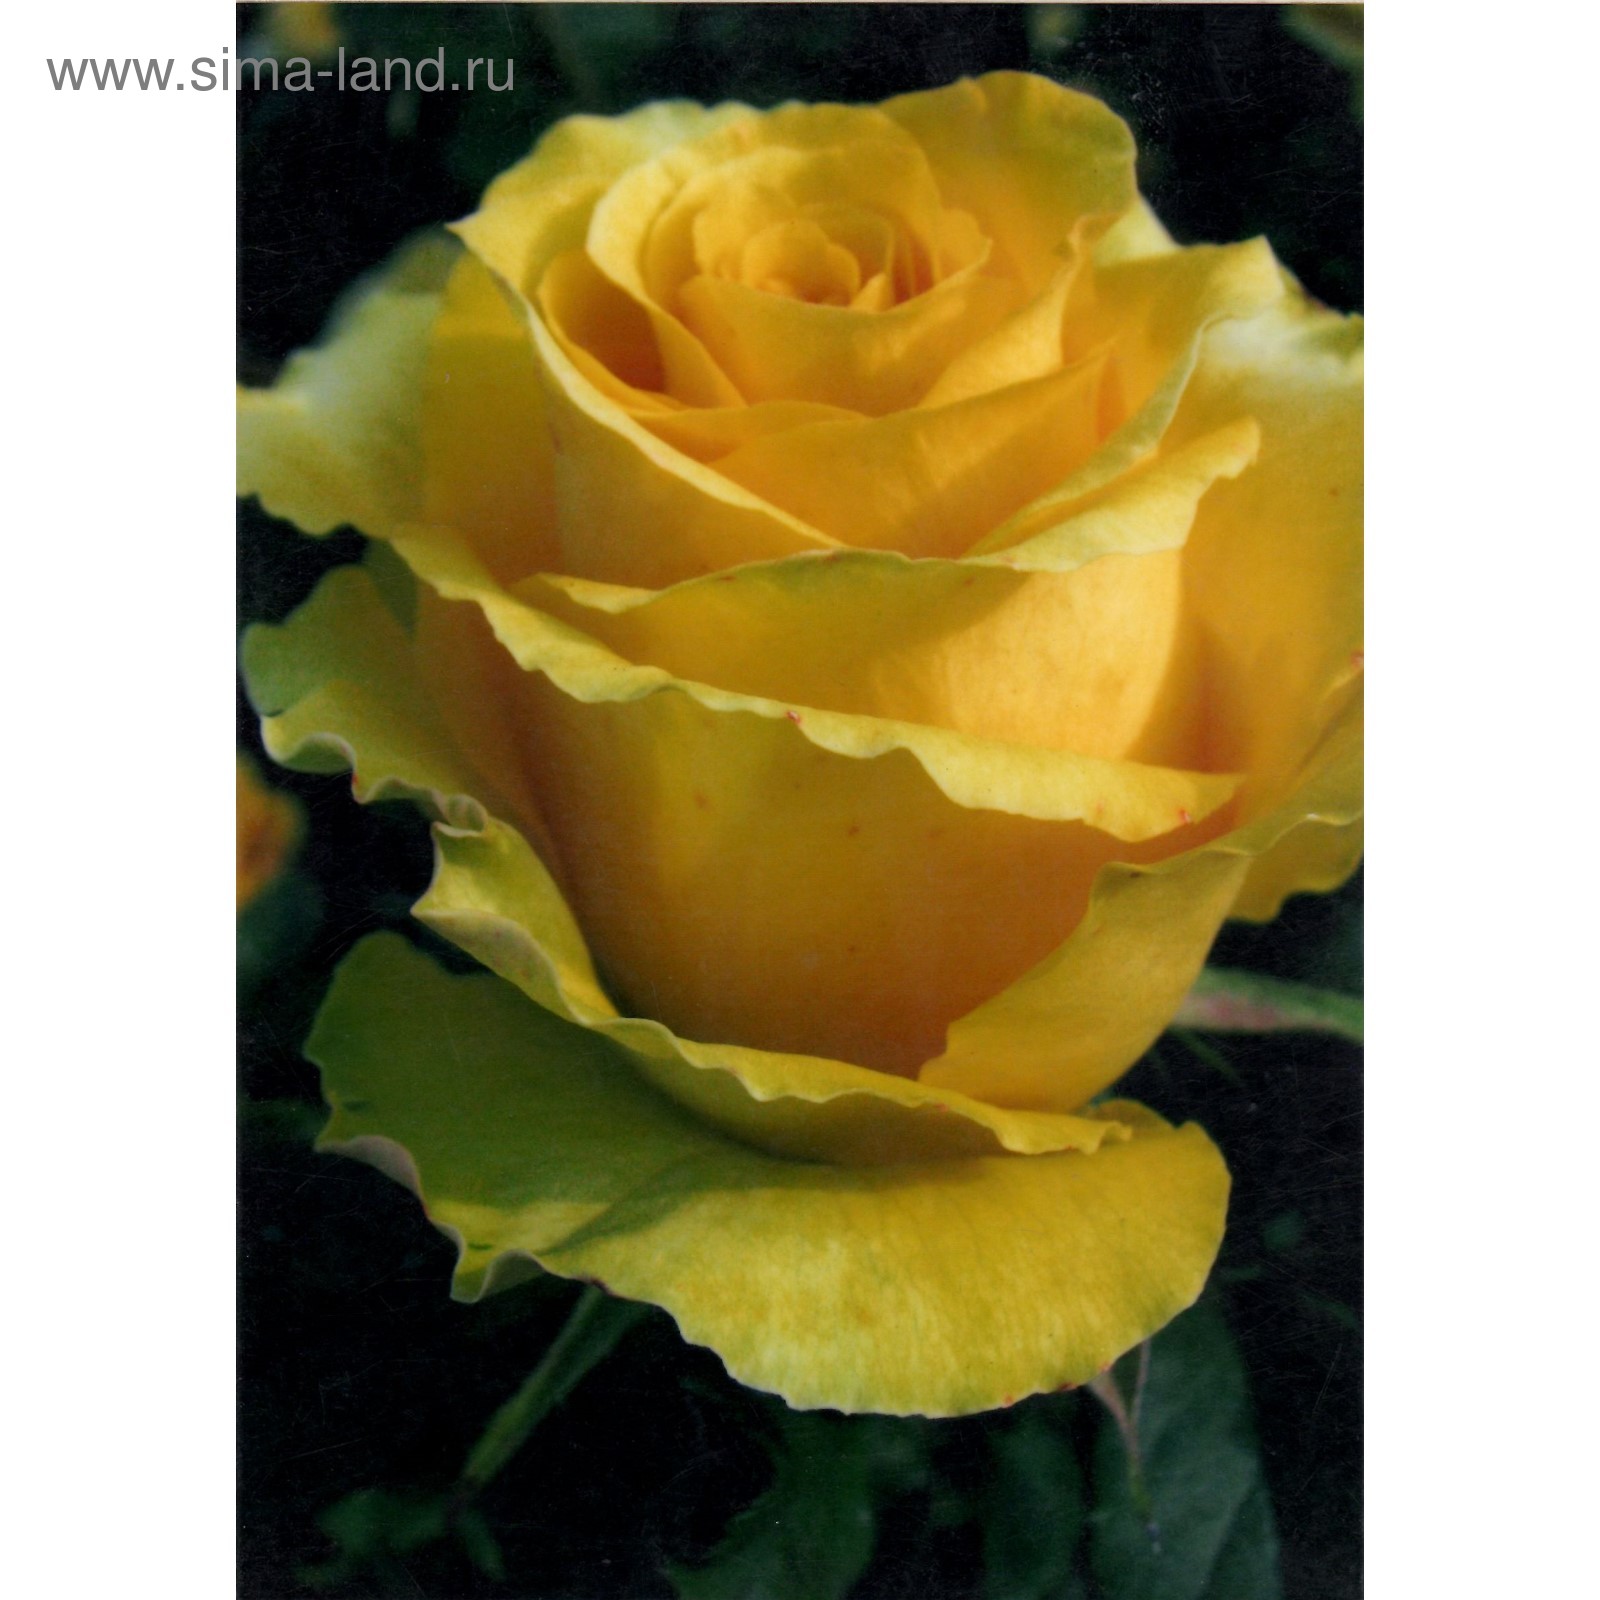 Роза чайно-гибридная 'Gina Lollobrigida'